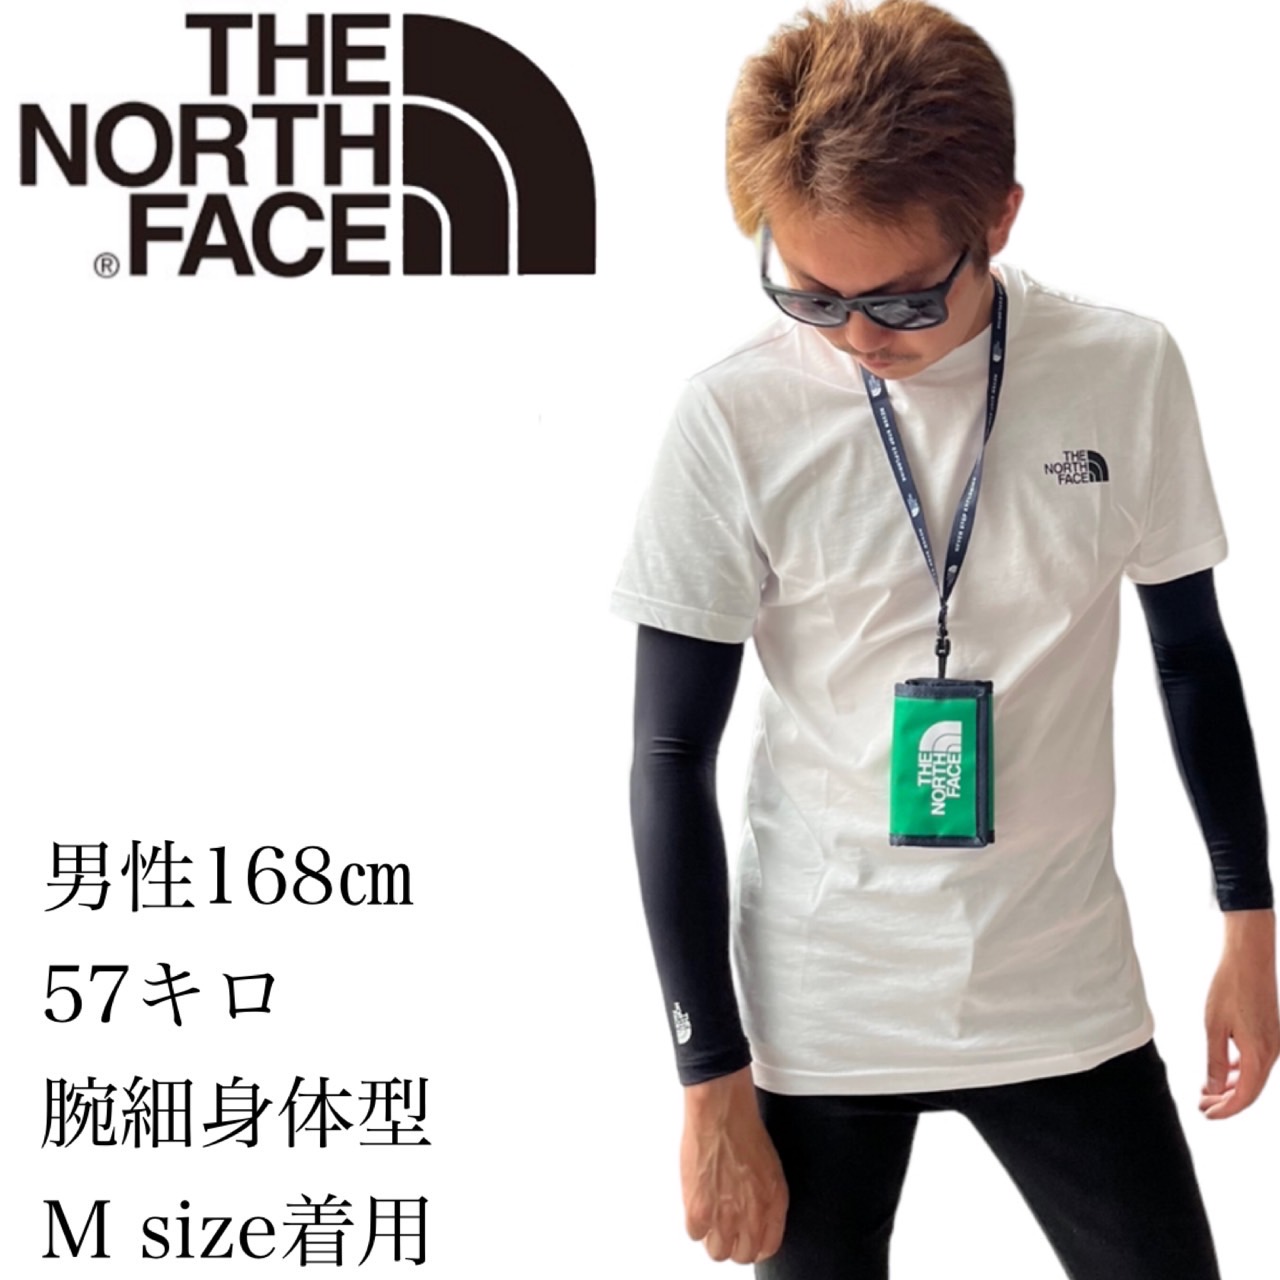 THE NORTH FACE アームカバー ブラック Mサイズ新品送料無料